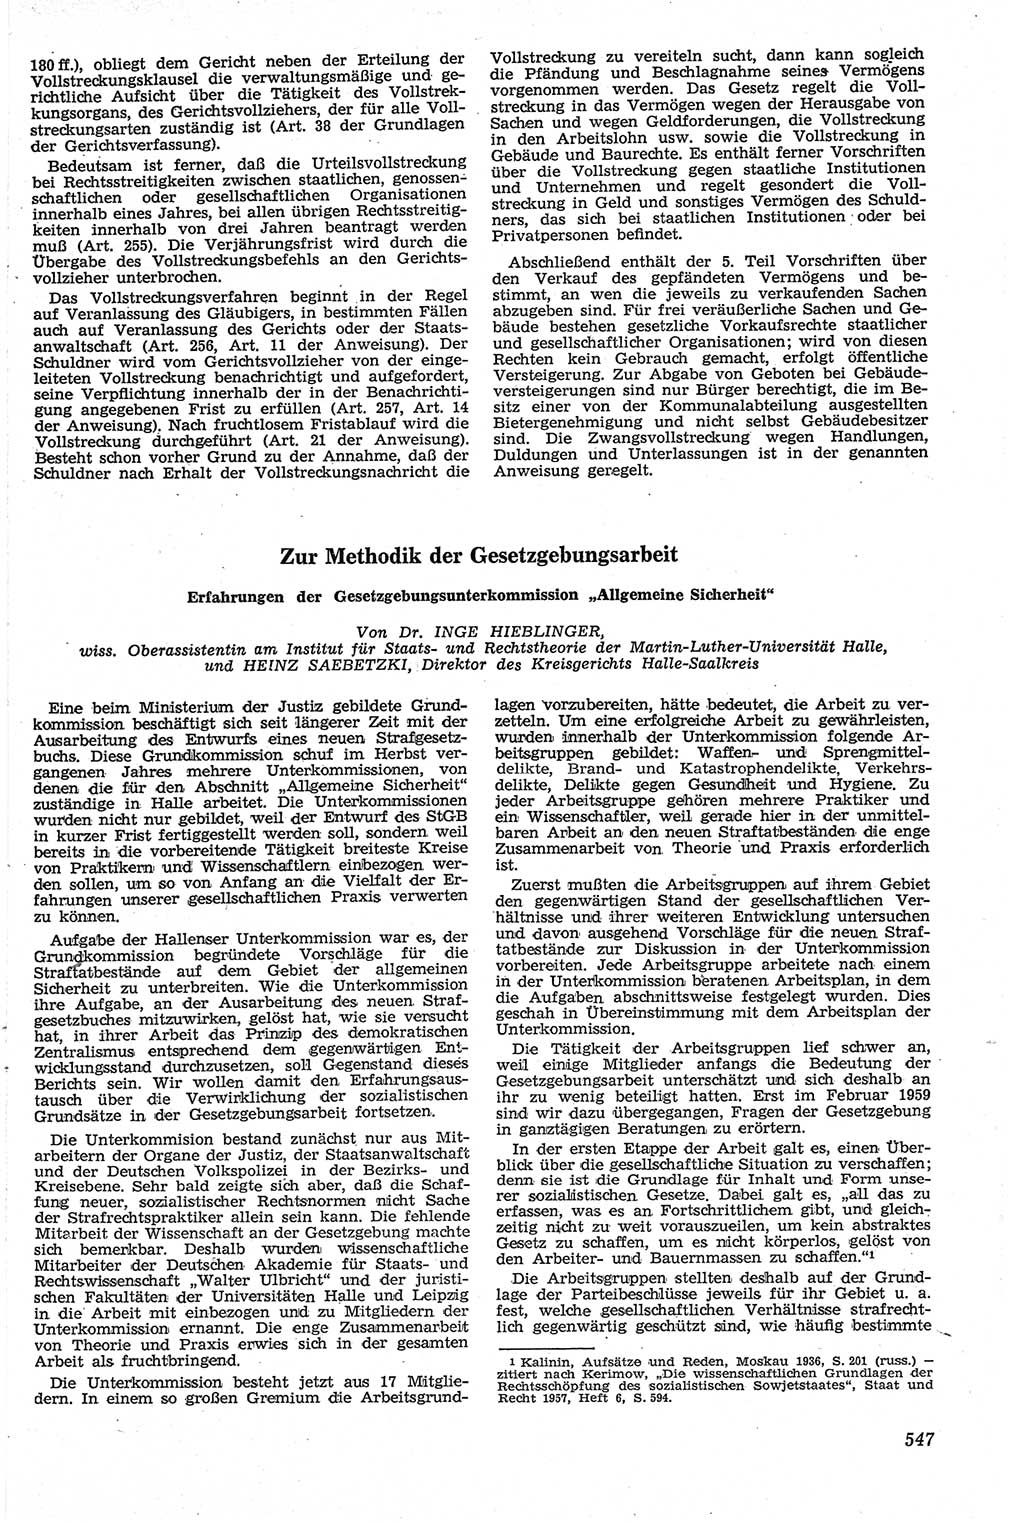 Neue Justiz (NJ), Zeitschrift für Recht und Rechtswissenschaft [Deutsche Demokratische Republik (DDR)], 13. Jahrgang 1959, Seite 547 (NJ DDR 1959, S. 547)